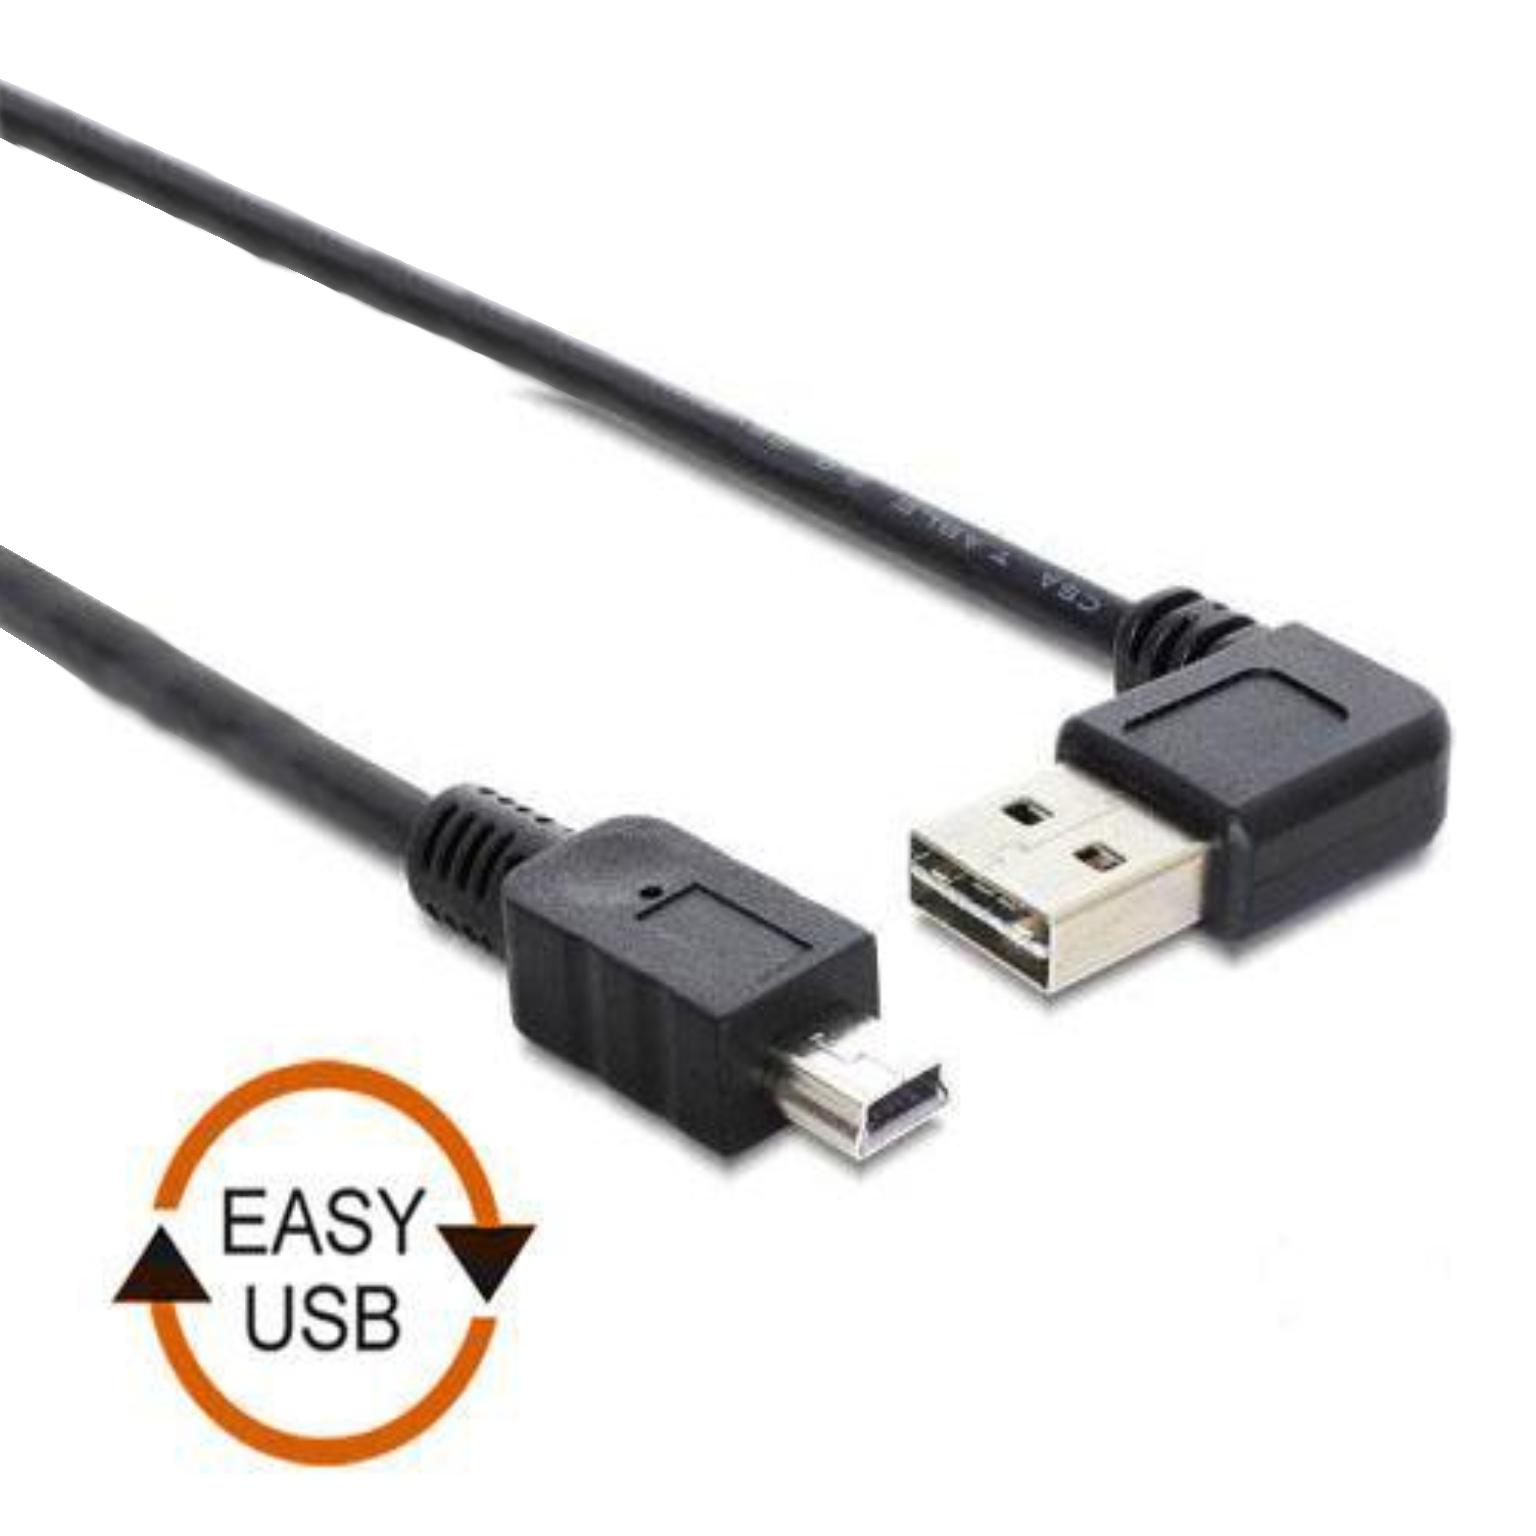 praktijk belegd broodje Uitvoeren Easy Mini USB Kabel - USB A naar Mini USB Kabel - Haaks - Zwart, Type: 2.0  - High Speed, Extra: USB aansluiting bruikbaar van 2 kanten, Aansluiting 1:  USB A male, Aansluiting 2: Mini USB male, 5 meter.